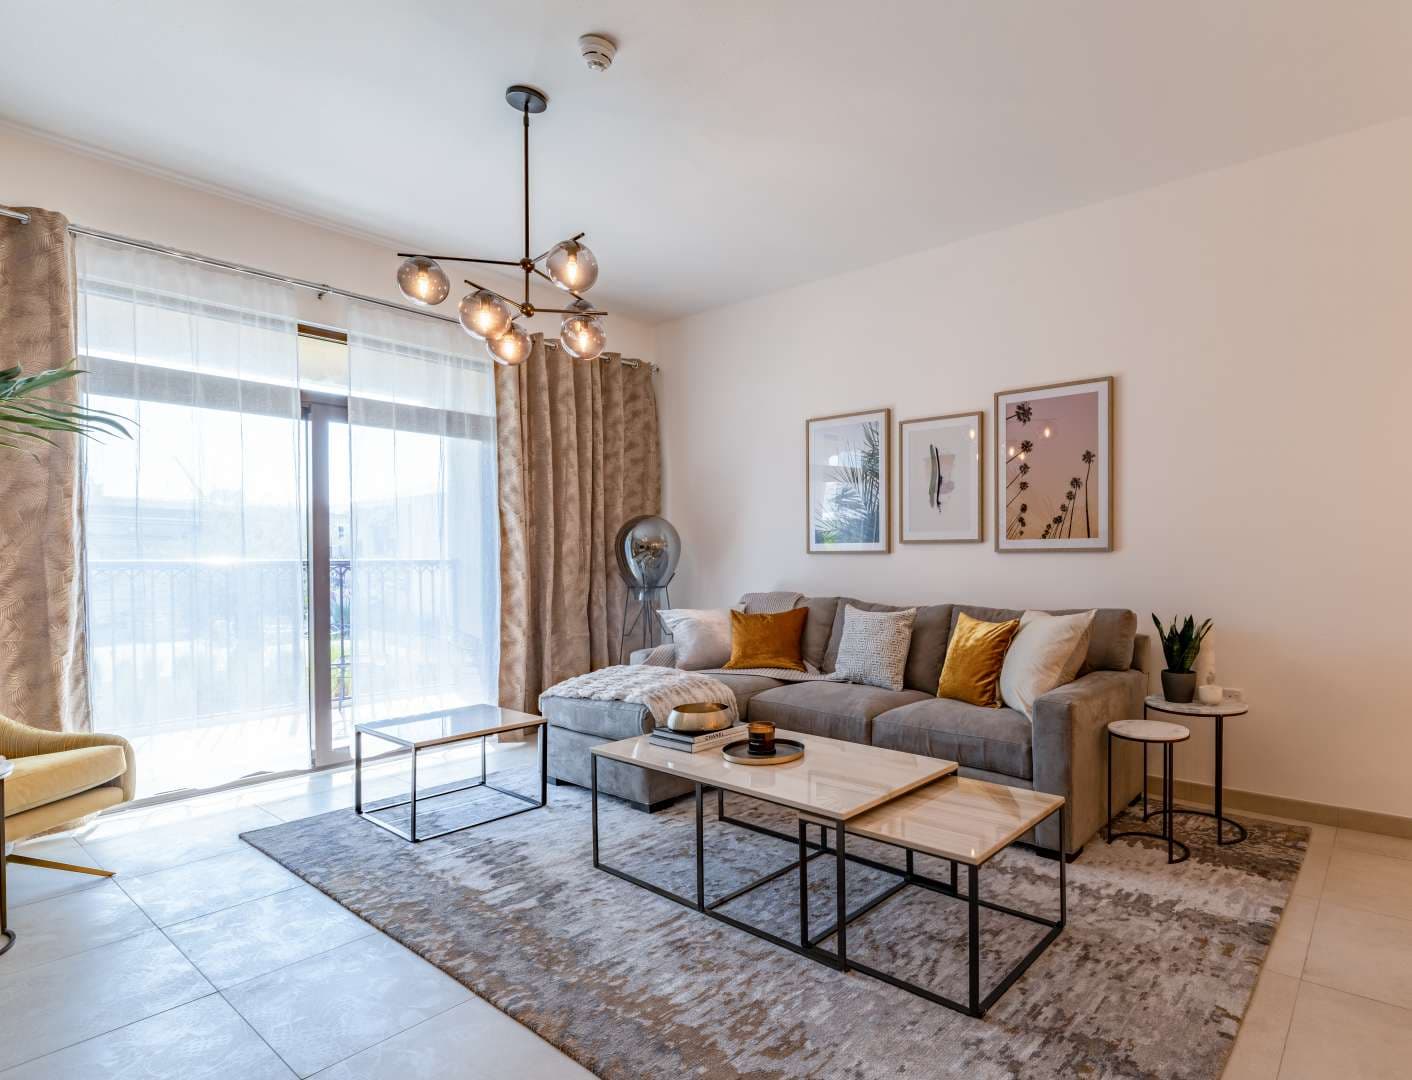 4 Bedroom Apartment For Sale Madinat Jumeirah Living Lp09815 2f816a641d48d200.jpg